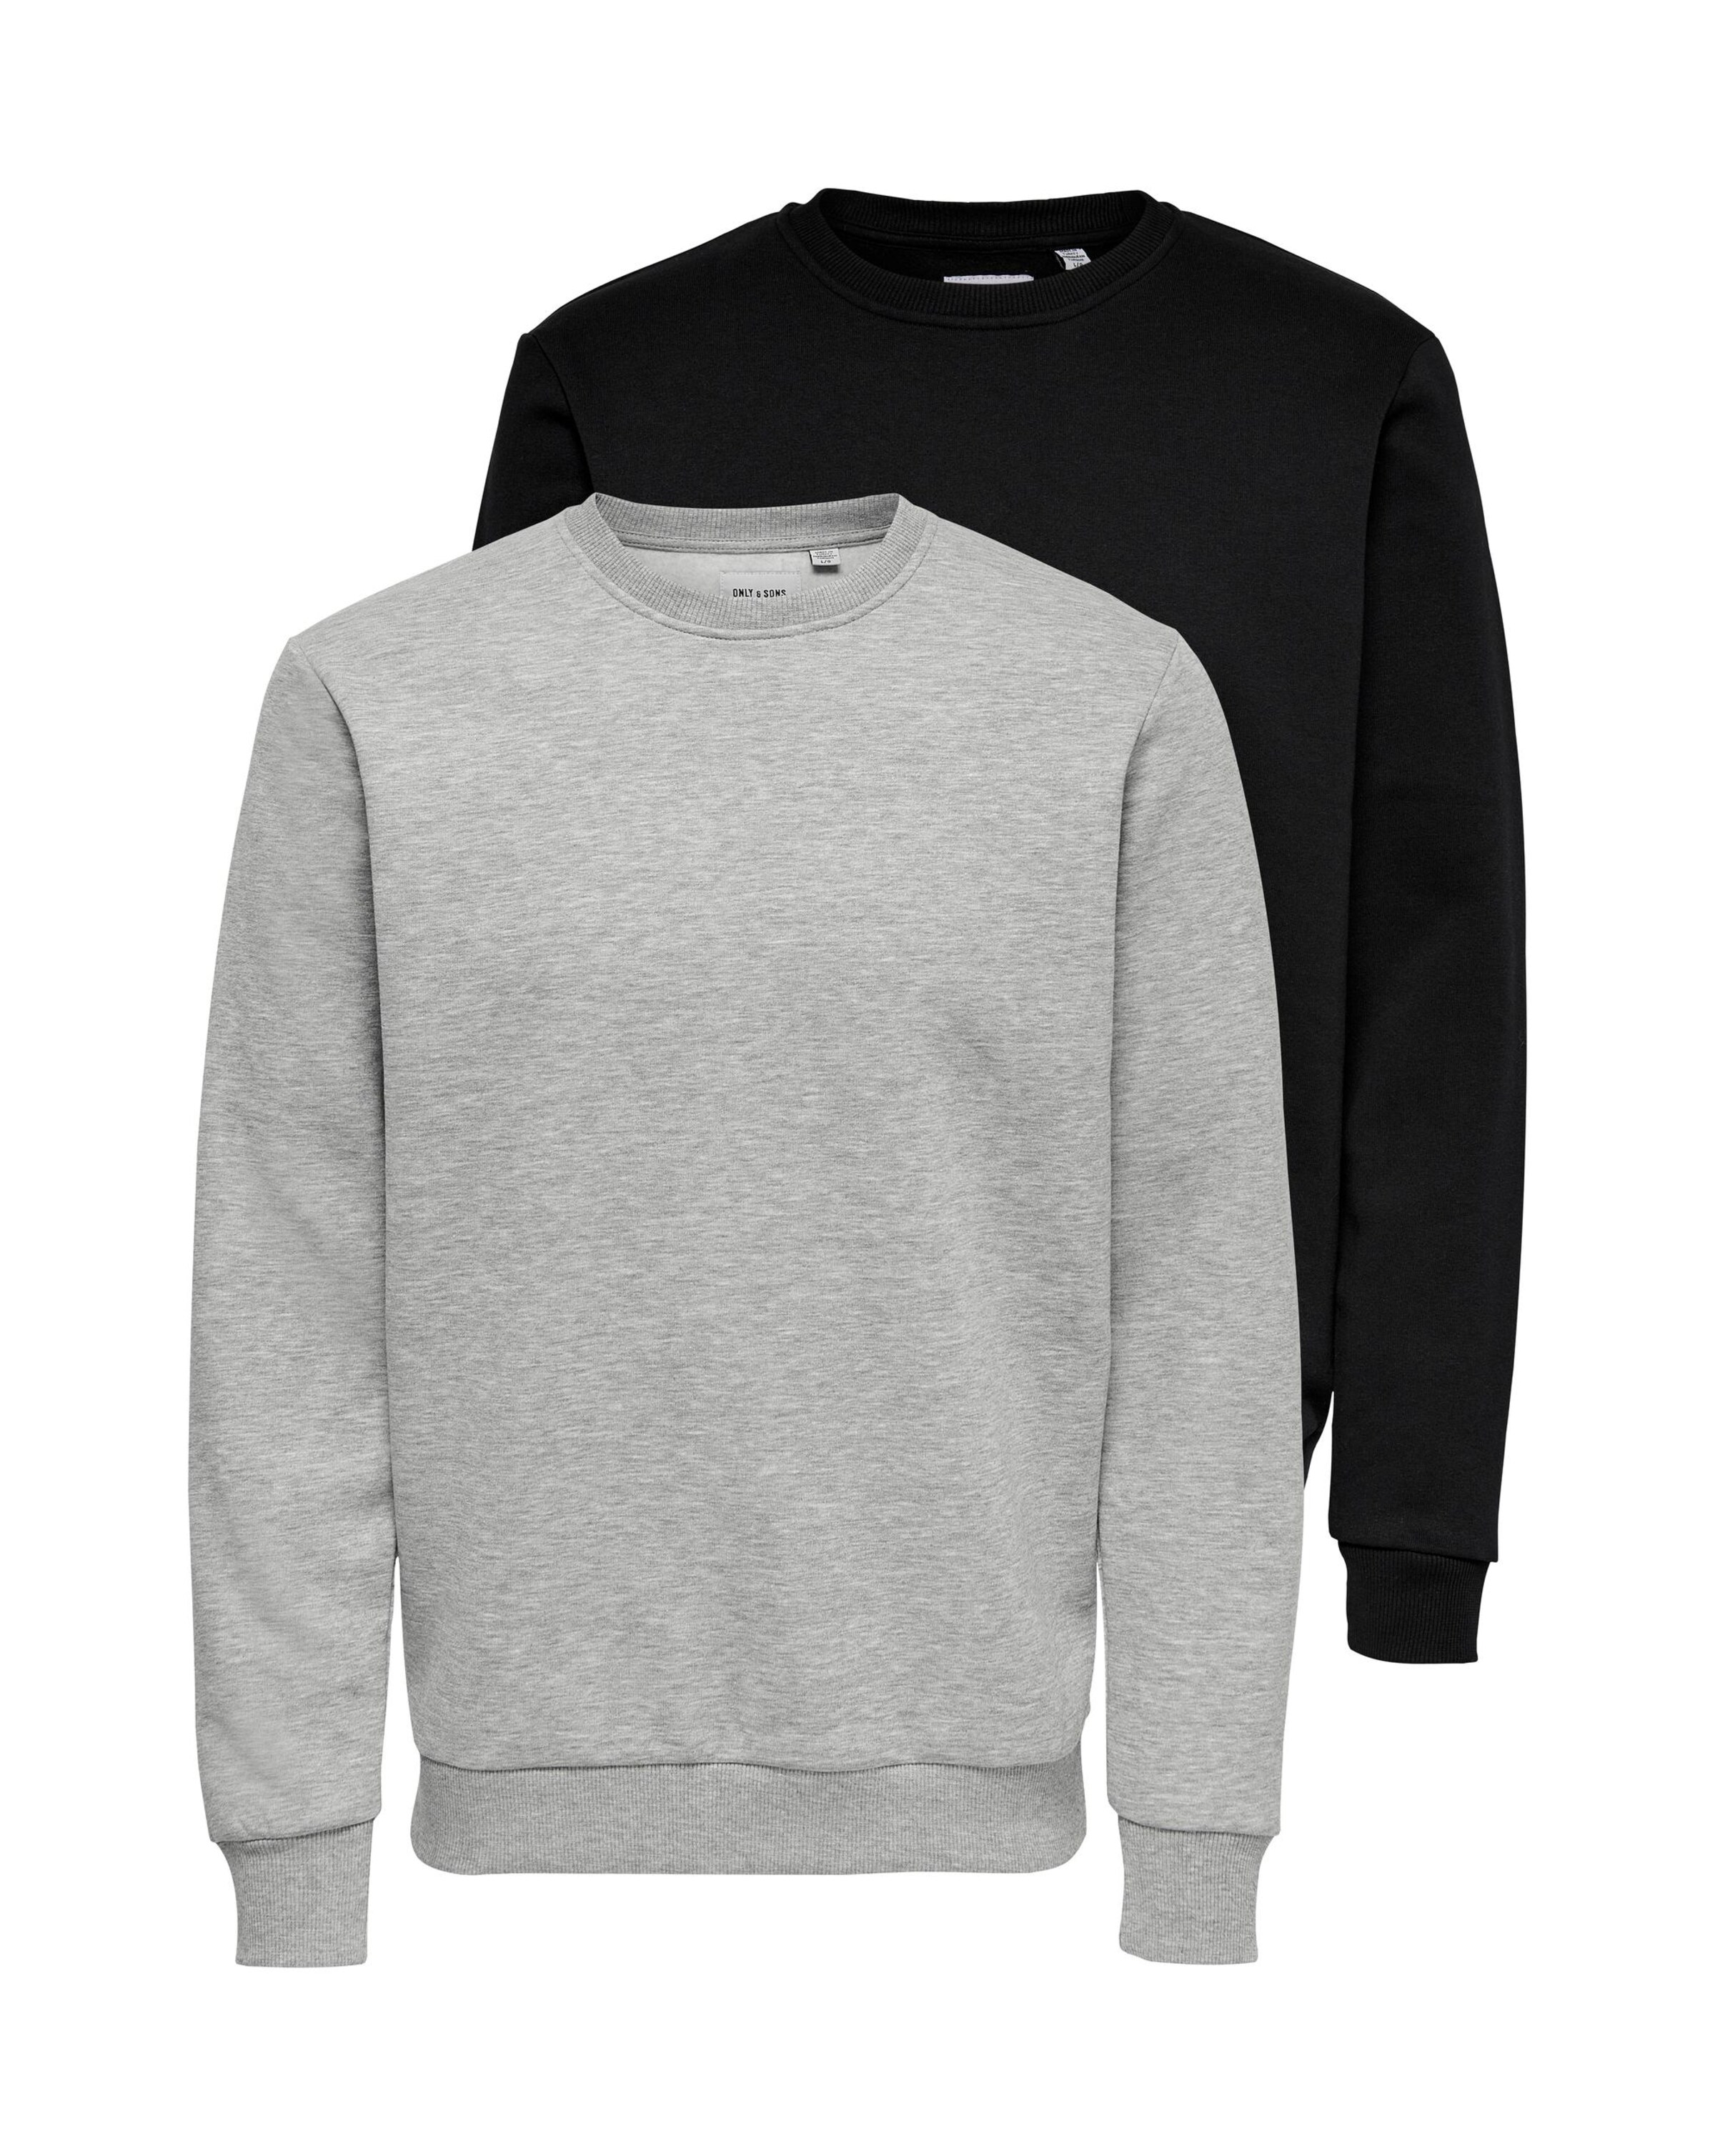 ONLY & SONS Pullover Grün/Schwarz L Rabatt 58 % HERREN Pullovers & Sweatshirts Basisch 